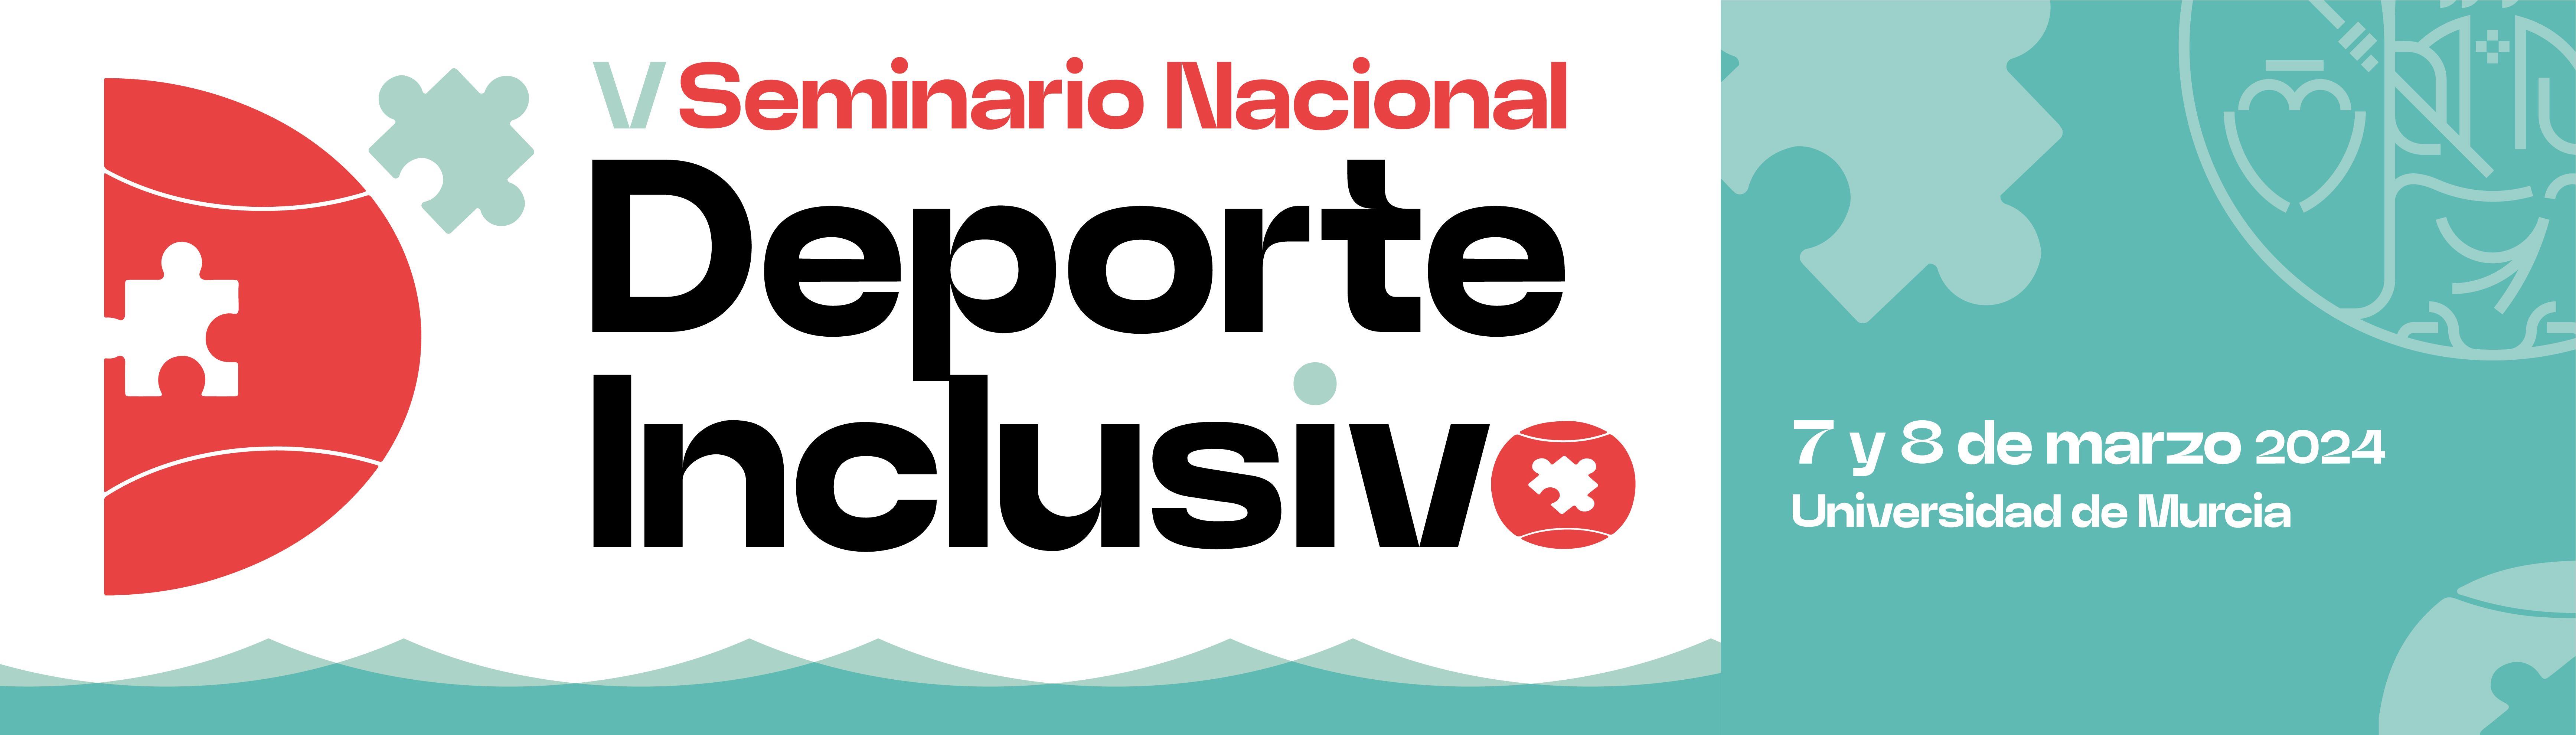 Logotipo Seminario Nacional de Deporte Inclusivo